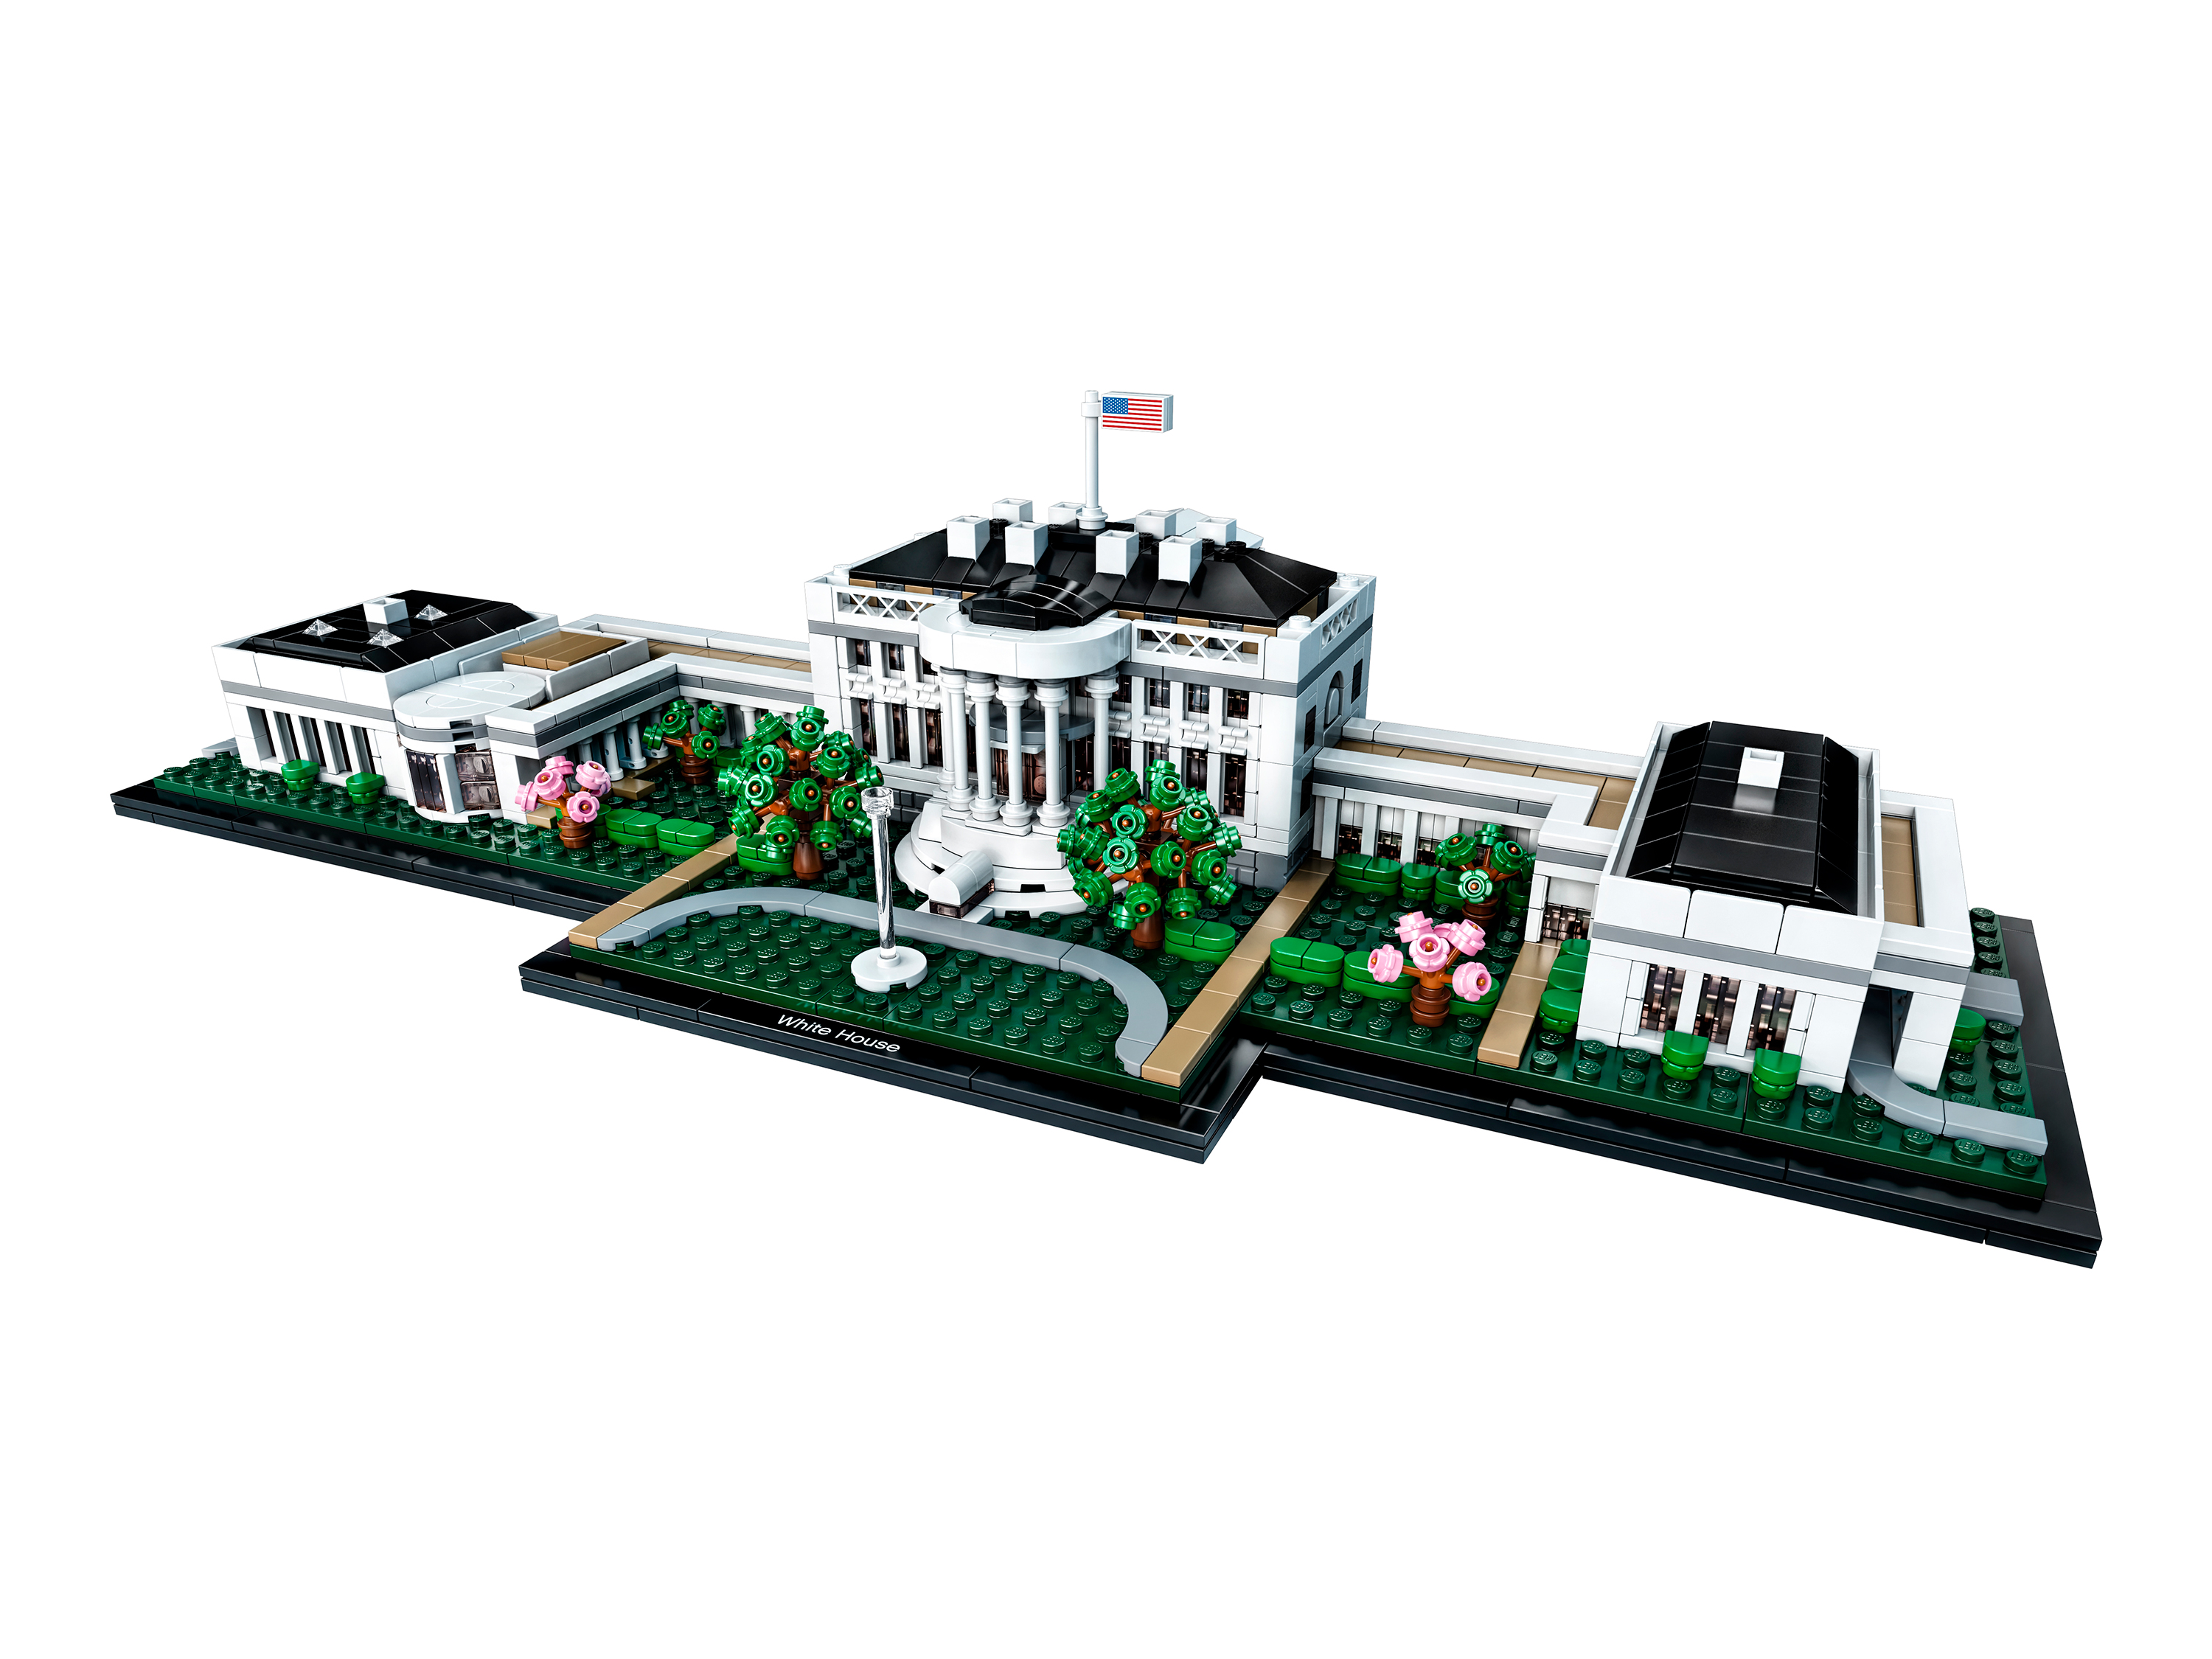 Конструктор Белый дом LEGO 21054